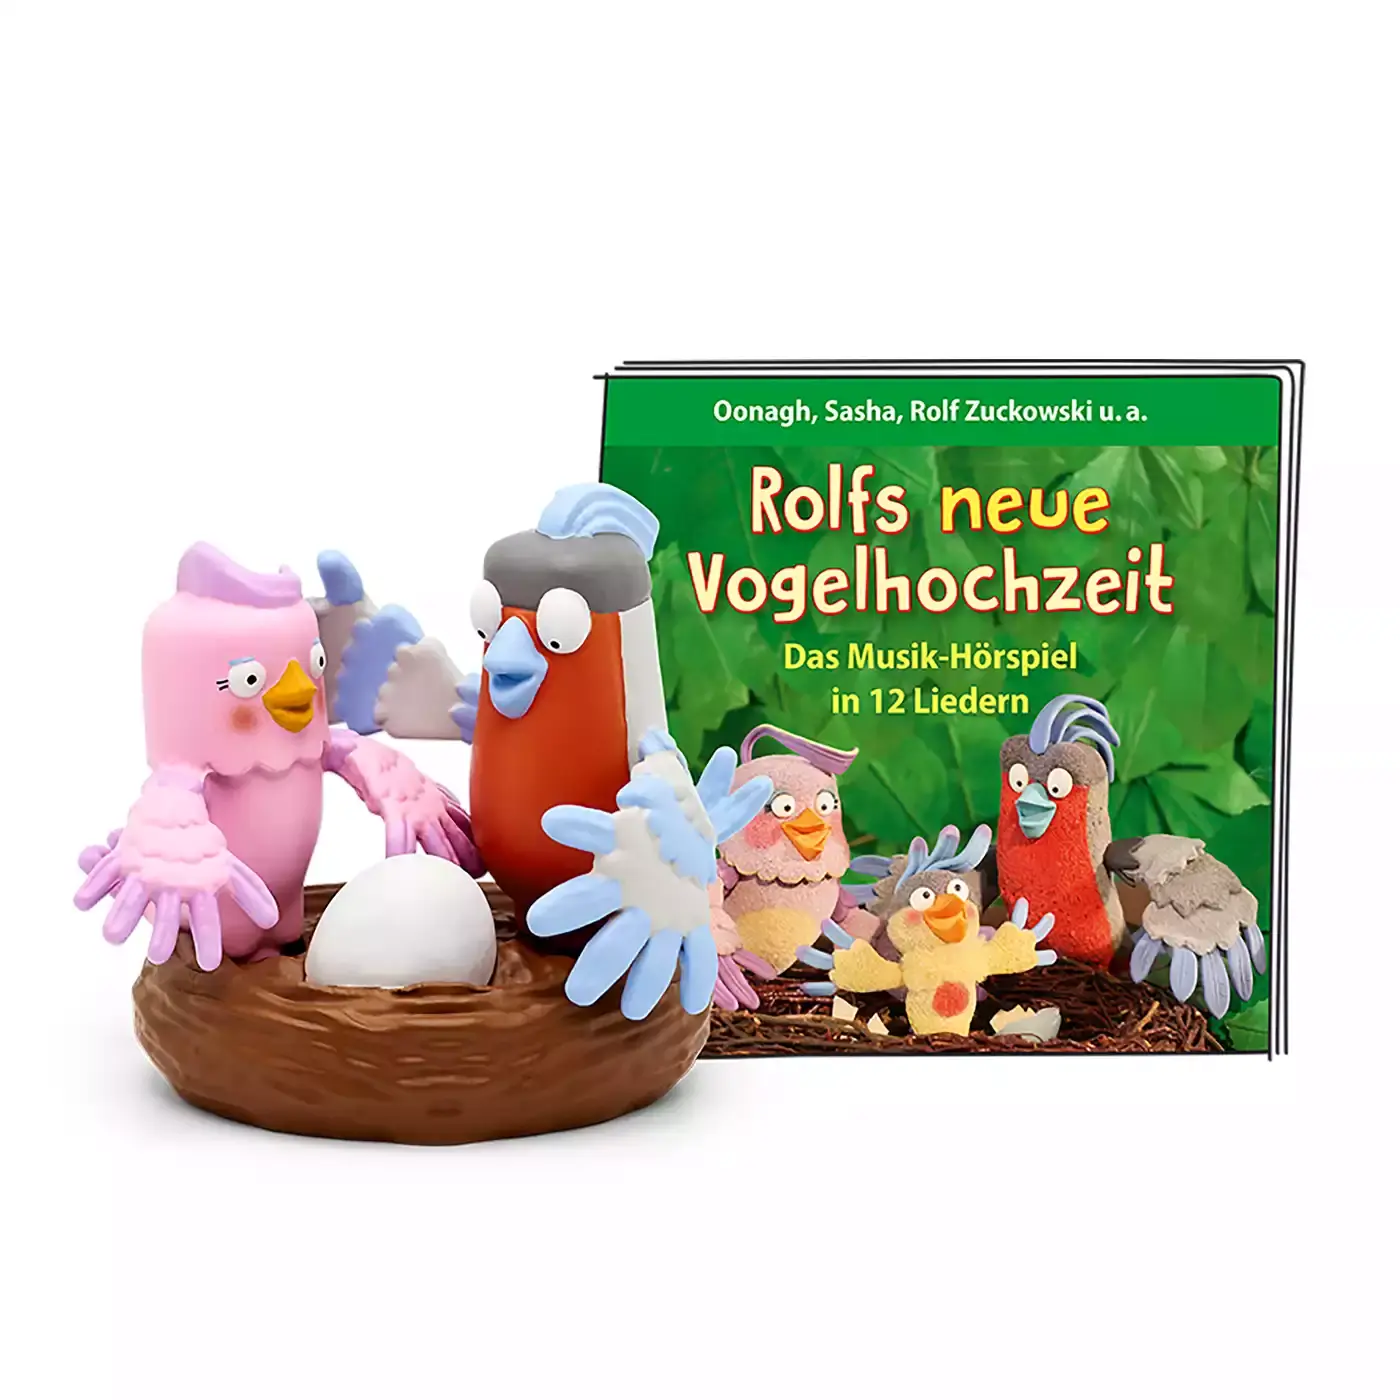 Rolf Zuckowski - Rolfs neue Vogelhochzeit tonies 2000578944605 3